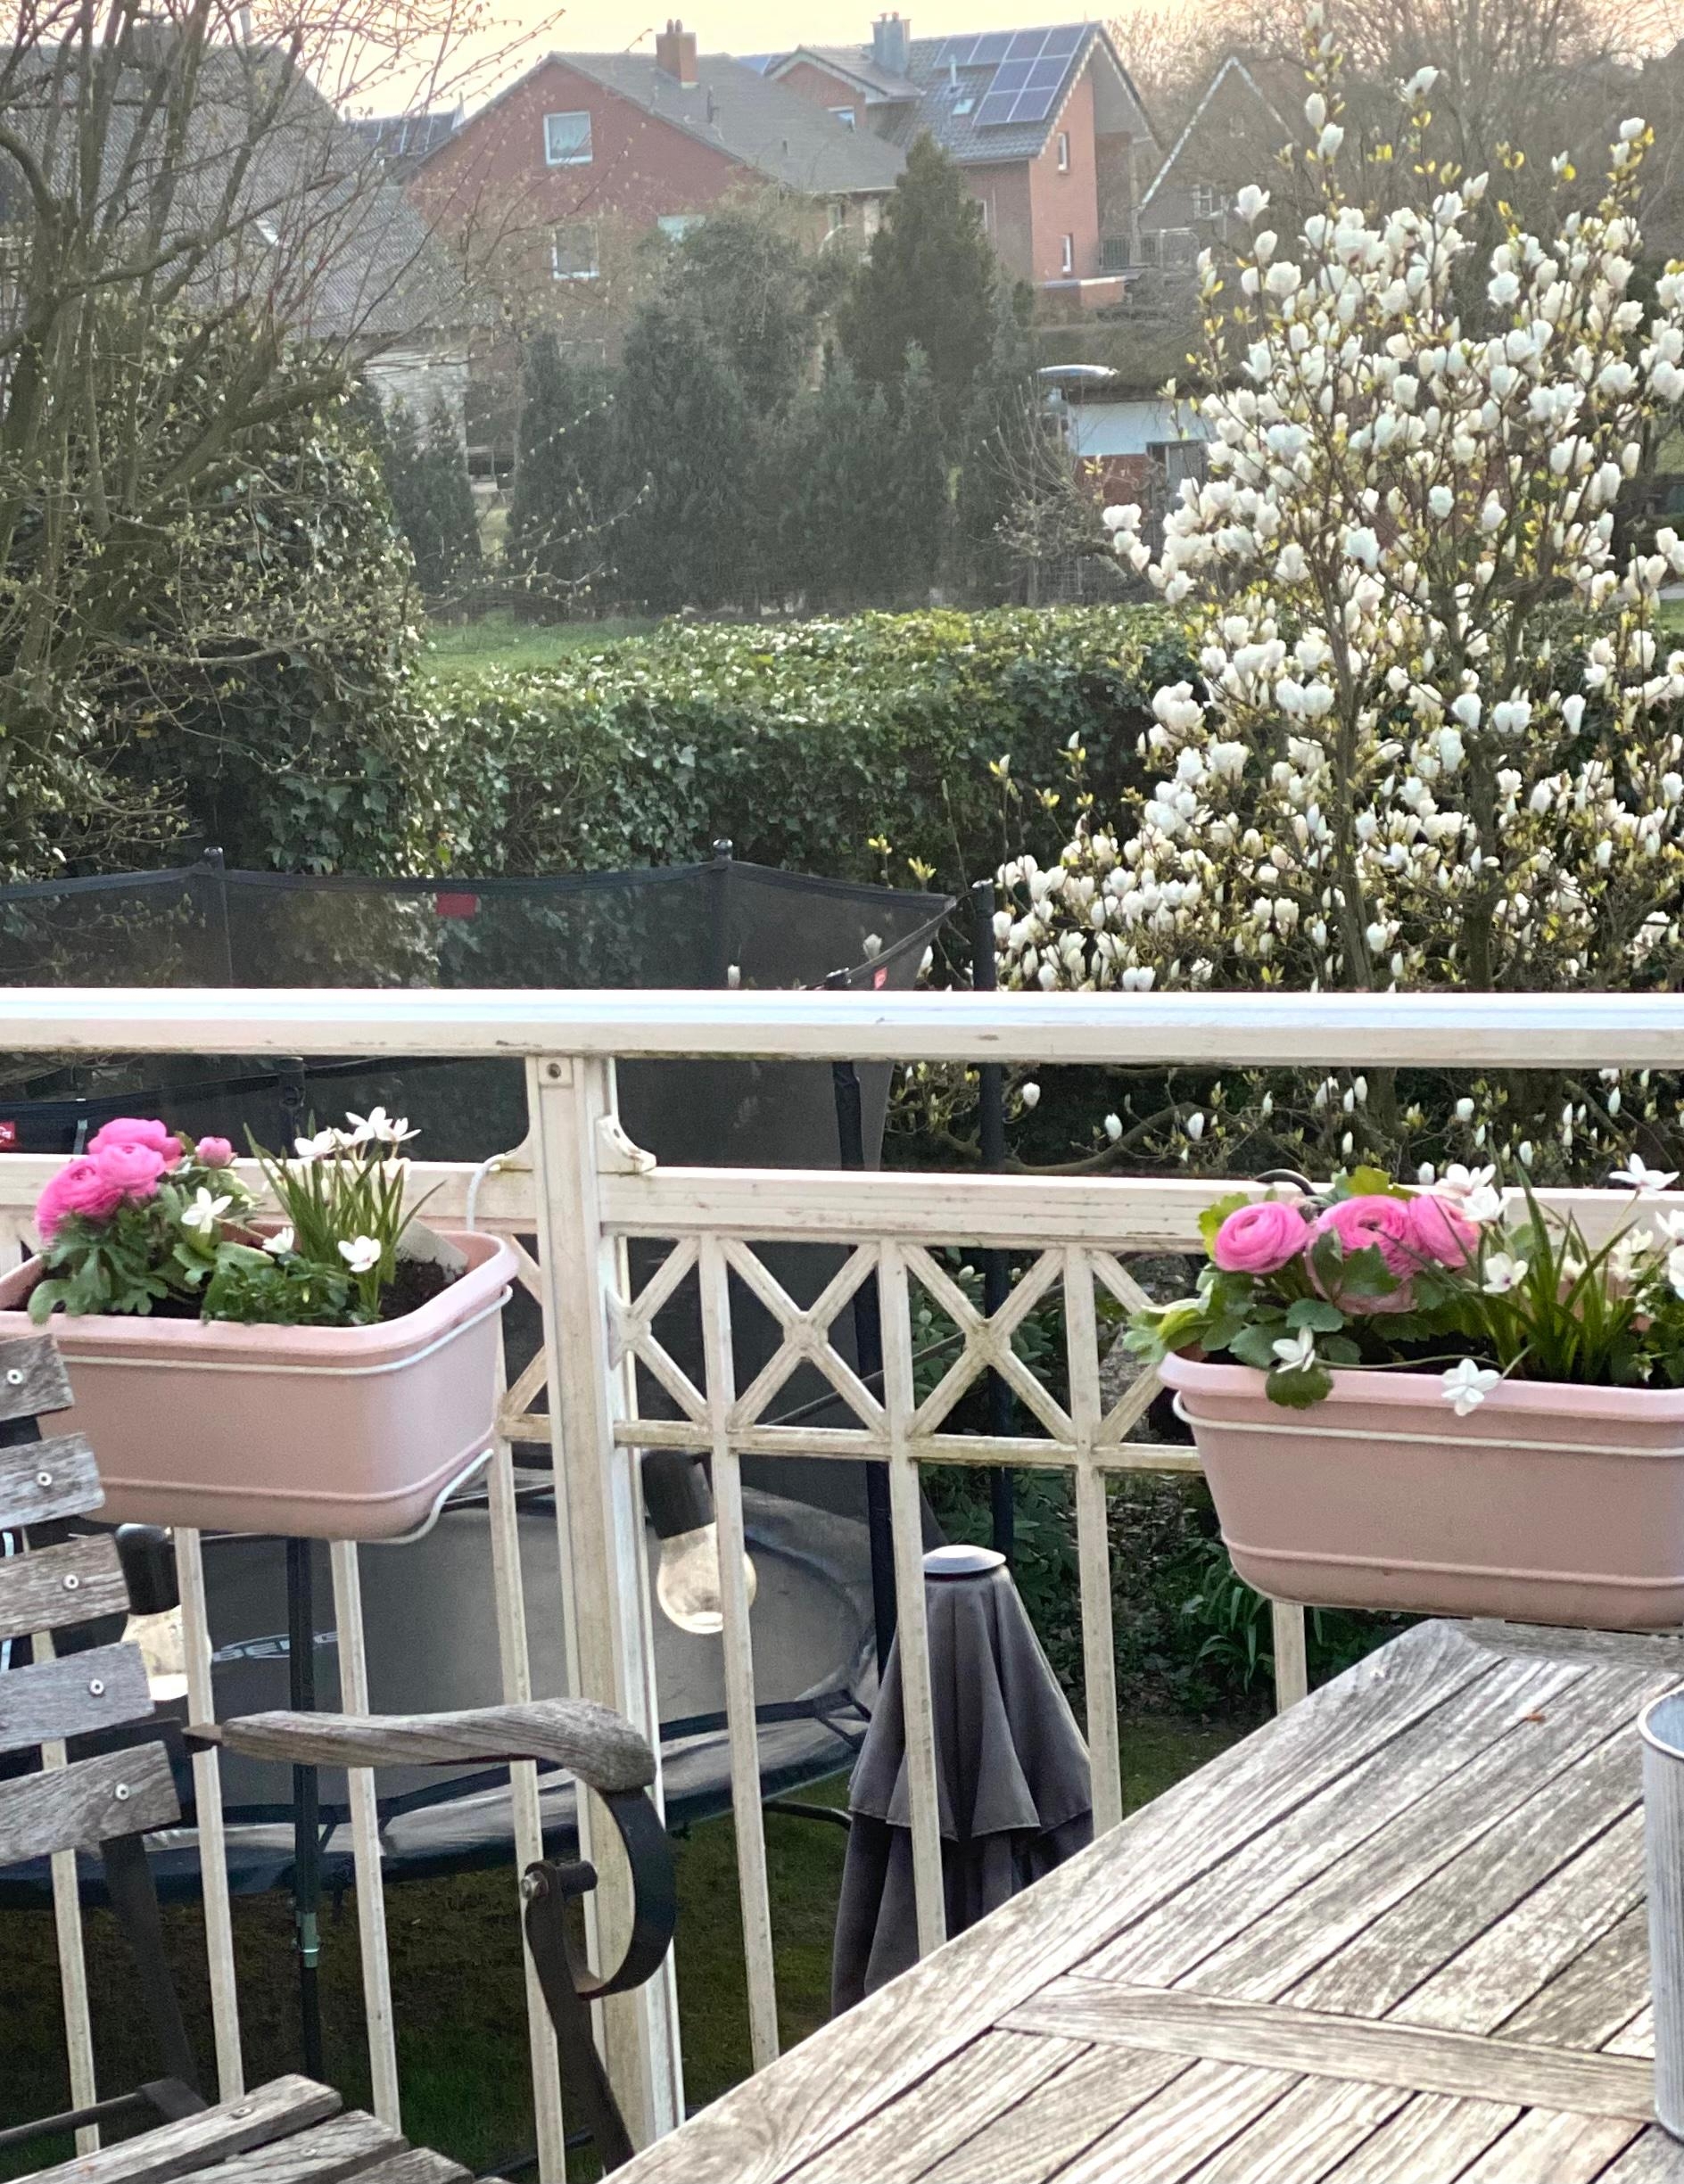 Blüten über Blüten! Endlich ist Frühling!, auch auf unserem Balkon.🌷#Frühlingserwachen #Blumen #Frühlingsblumen #Balkon 